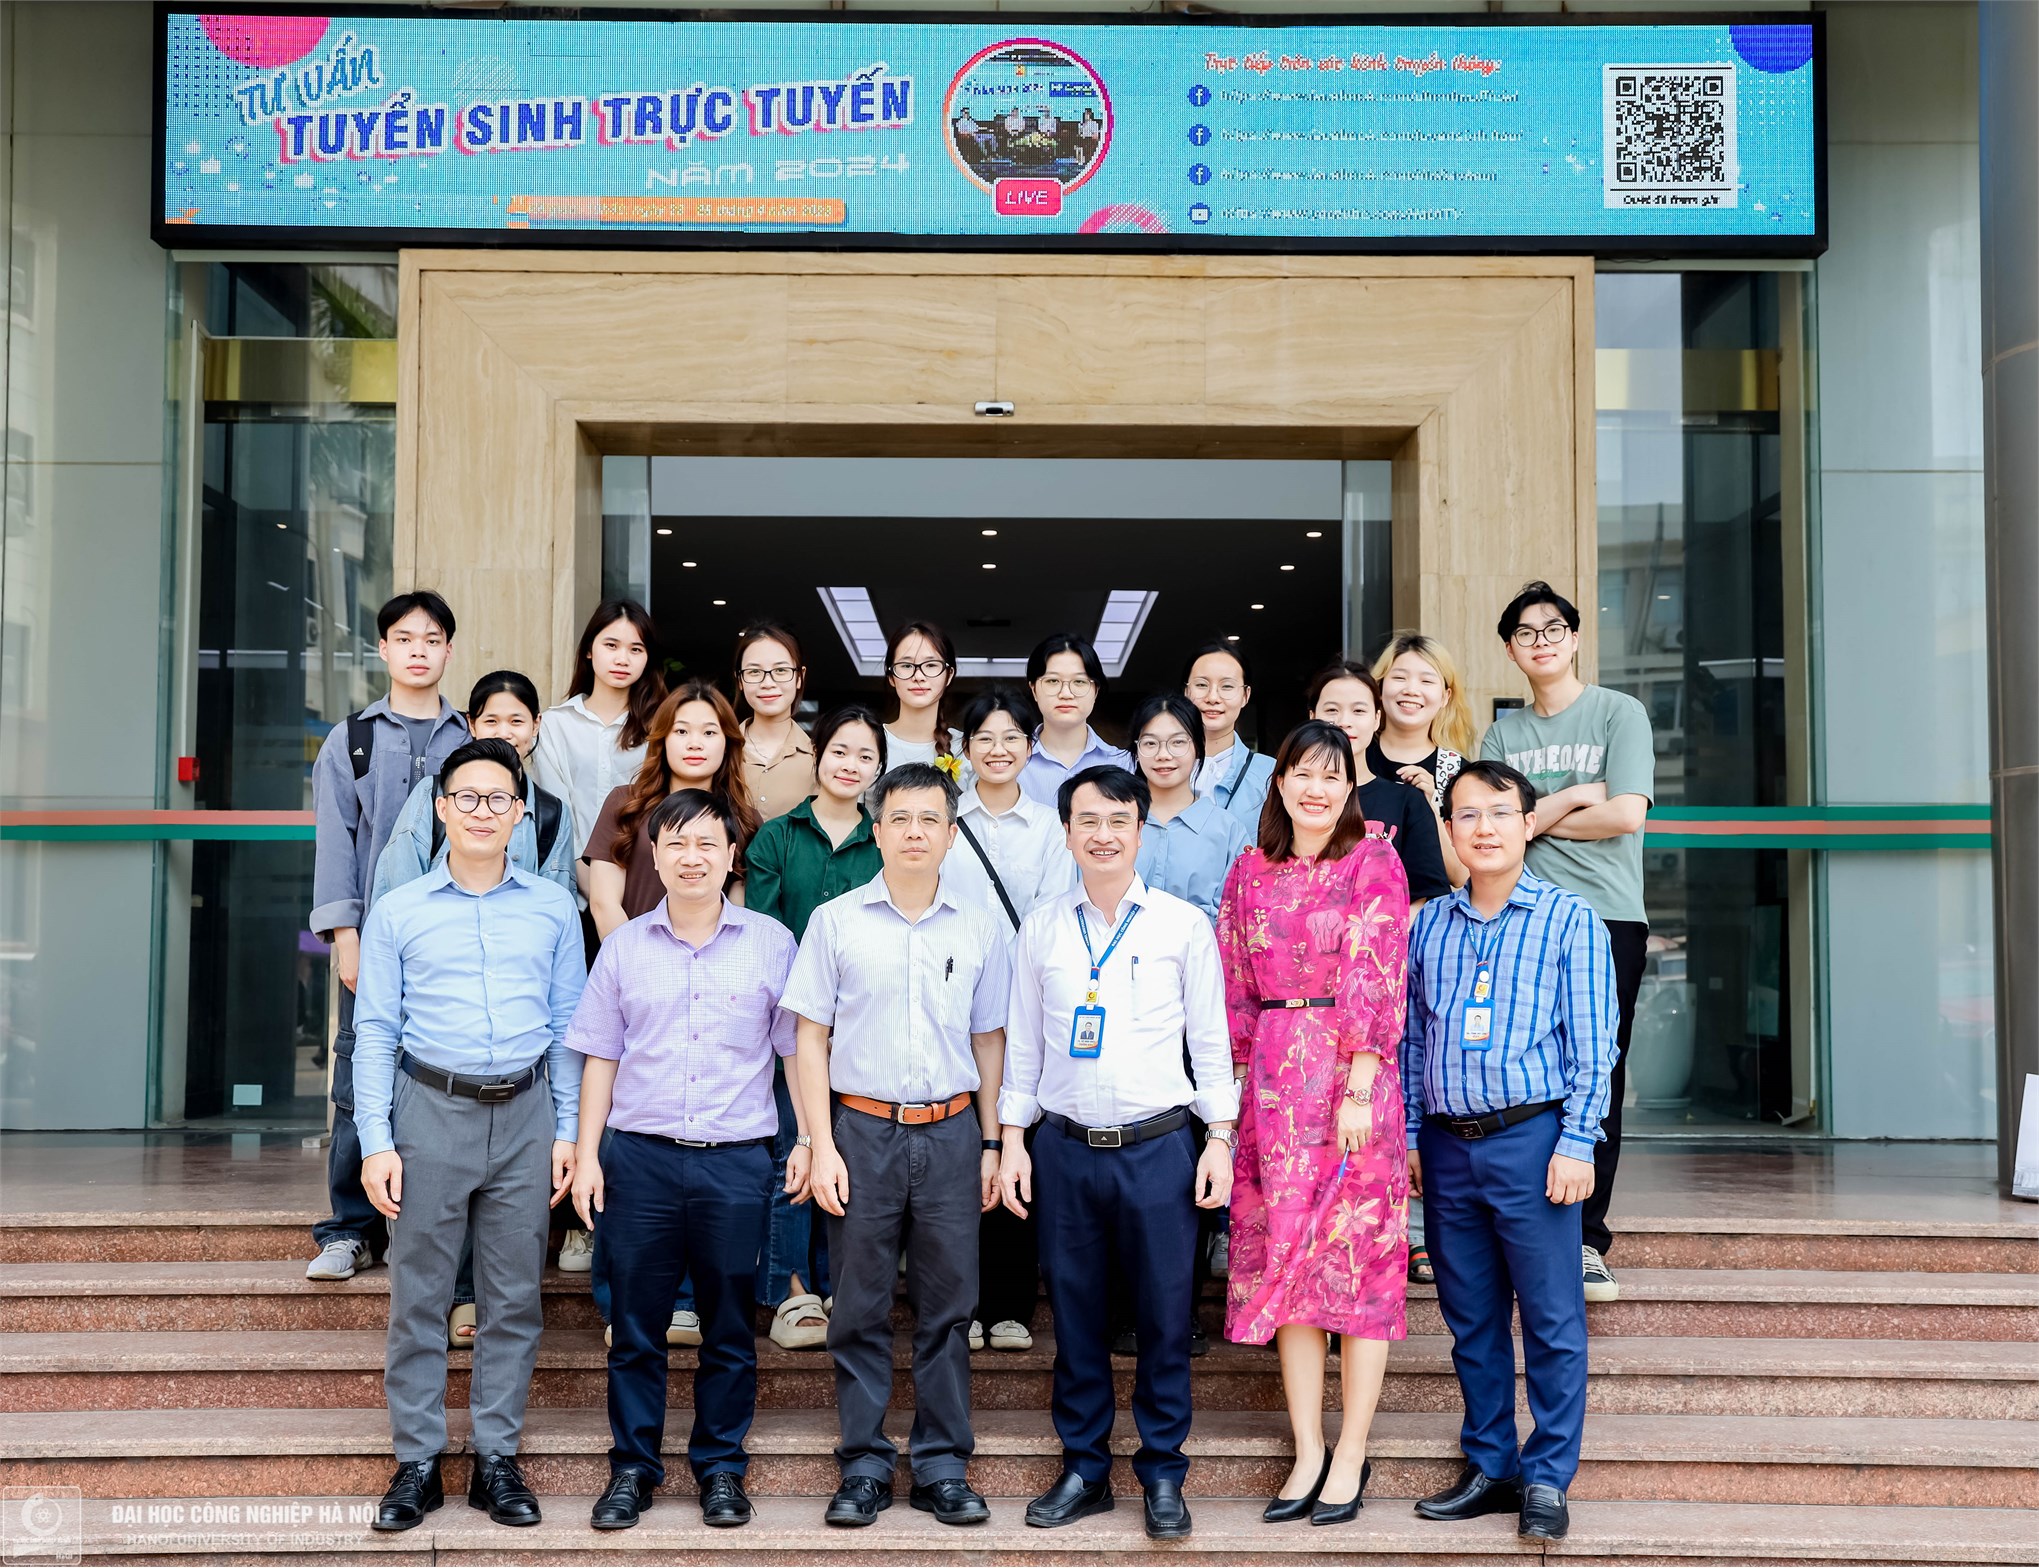 Tiếp đón đoàn công tác Trường Đại học Bách khoa Quế Lâm, Trung Quốc sang thăm và làm việc